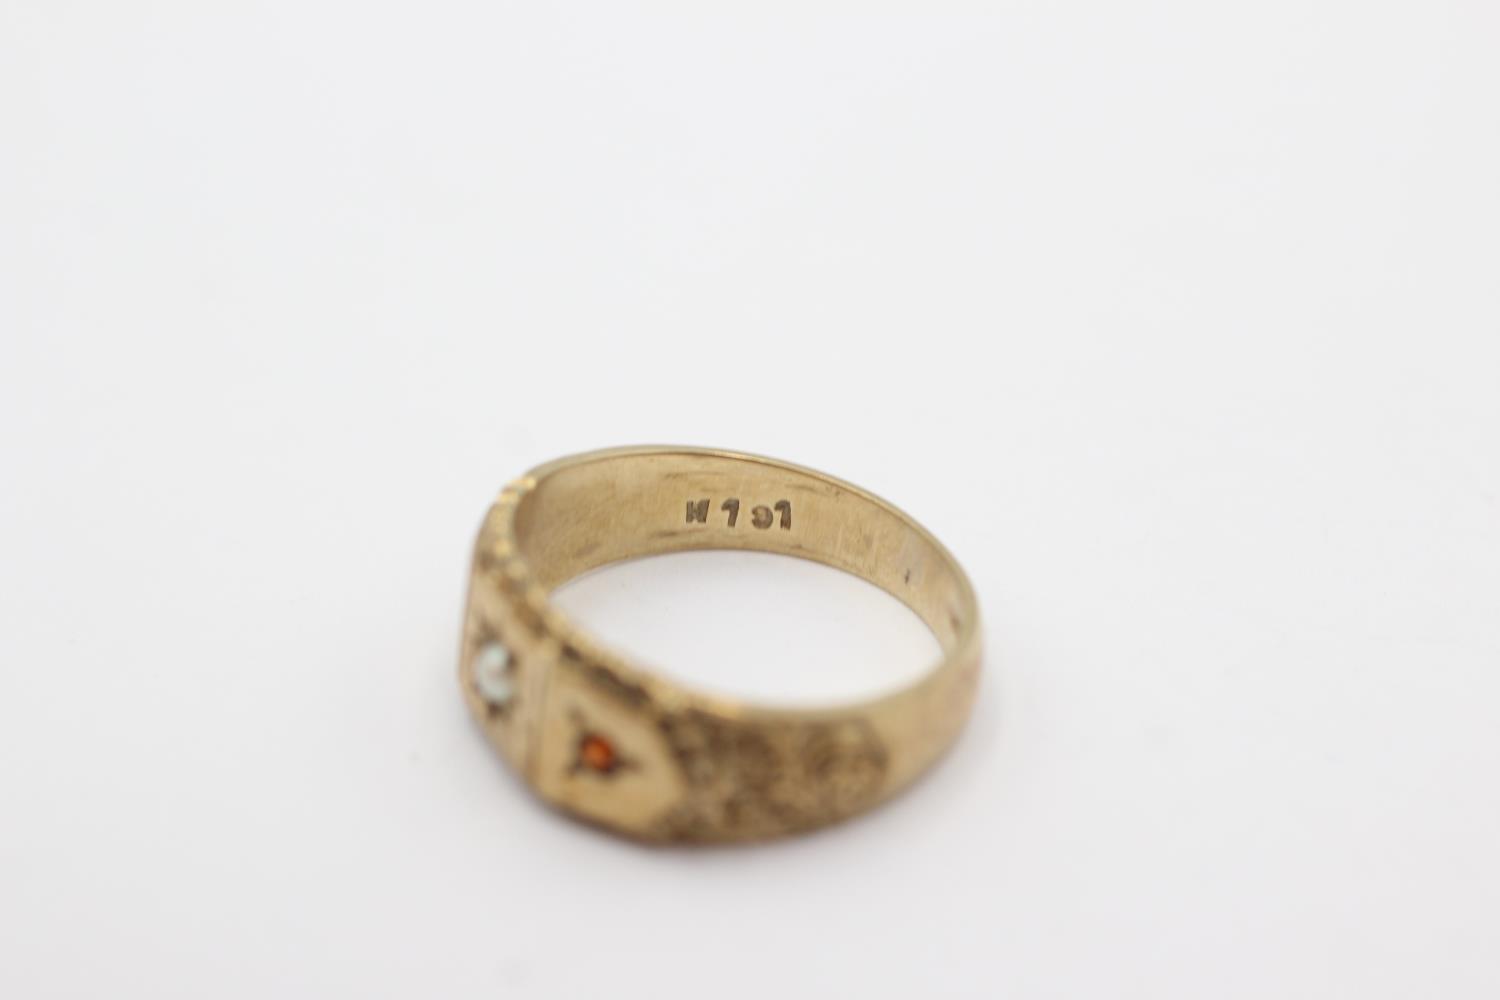 9ct gold garnet & pearl starburst ring (3.7g) Size M - Image 4 of 4